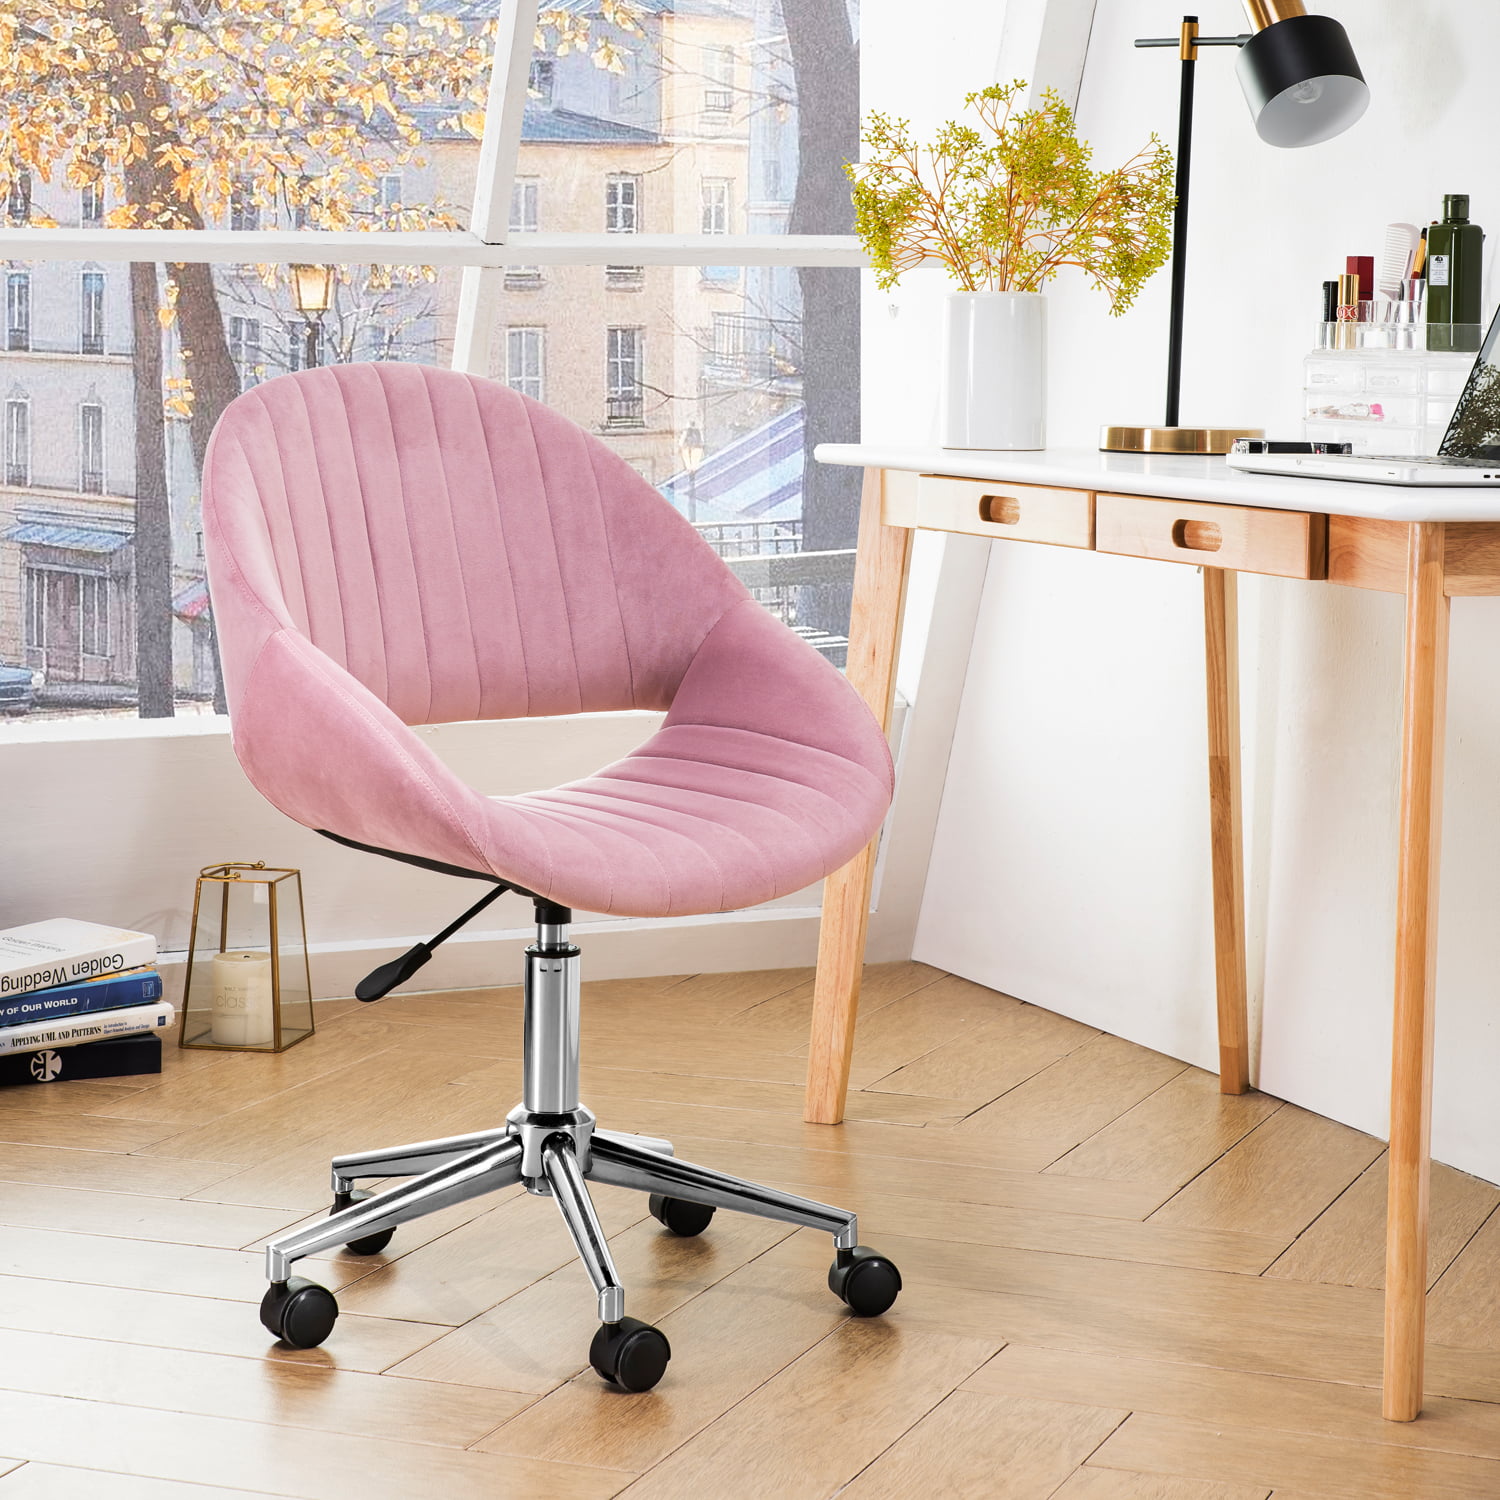 OVIOS Cute Desk Chair,Plush Velvet Office Chair for Home ...